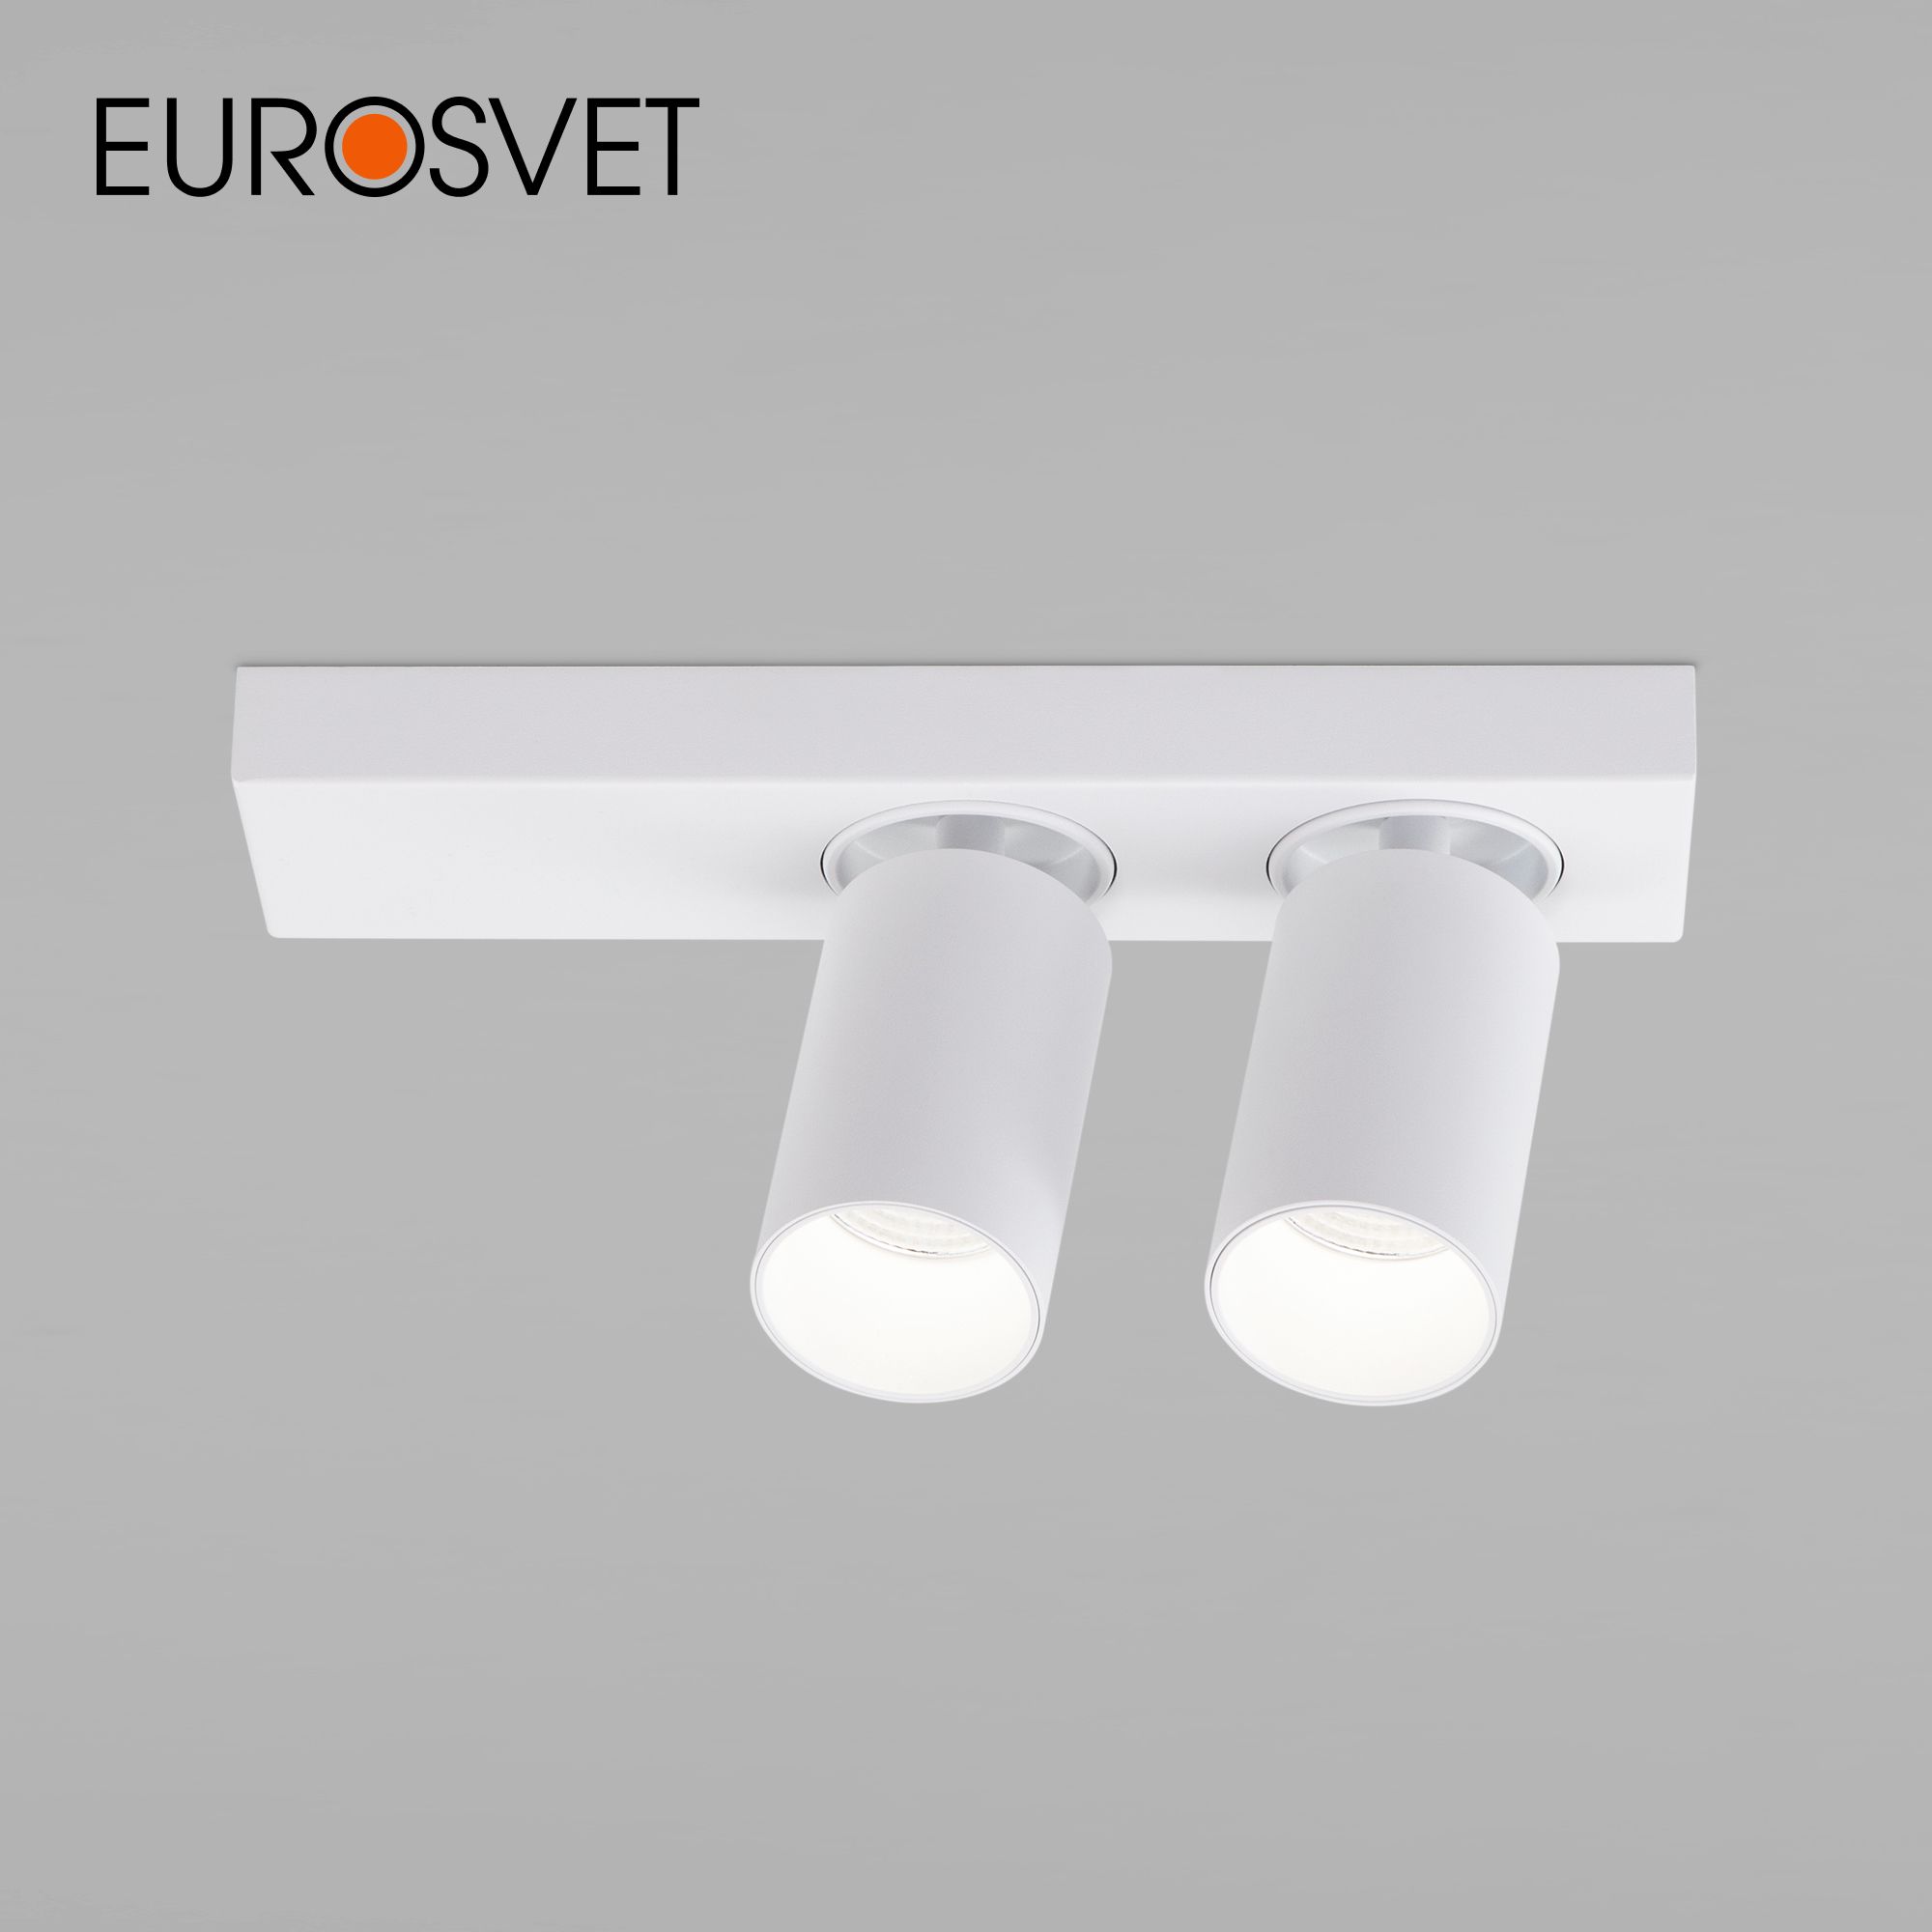 Наклад. светодиодный светильник Eurosvet Flank 20139/2 LED белый 2 поворотных спота 4200 К